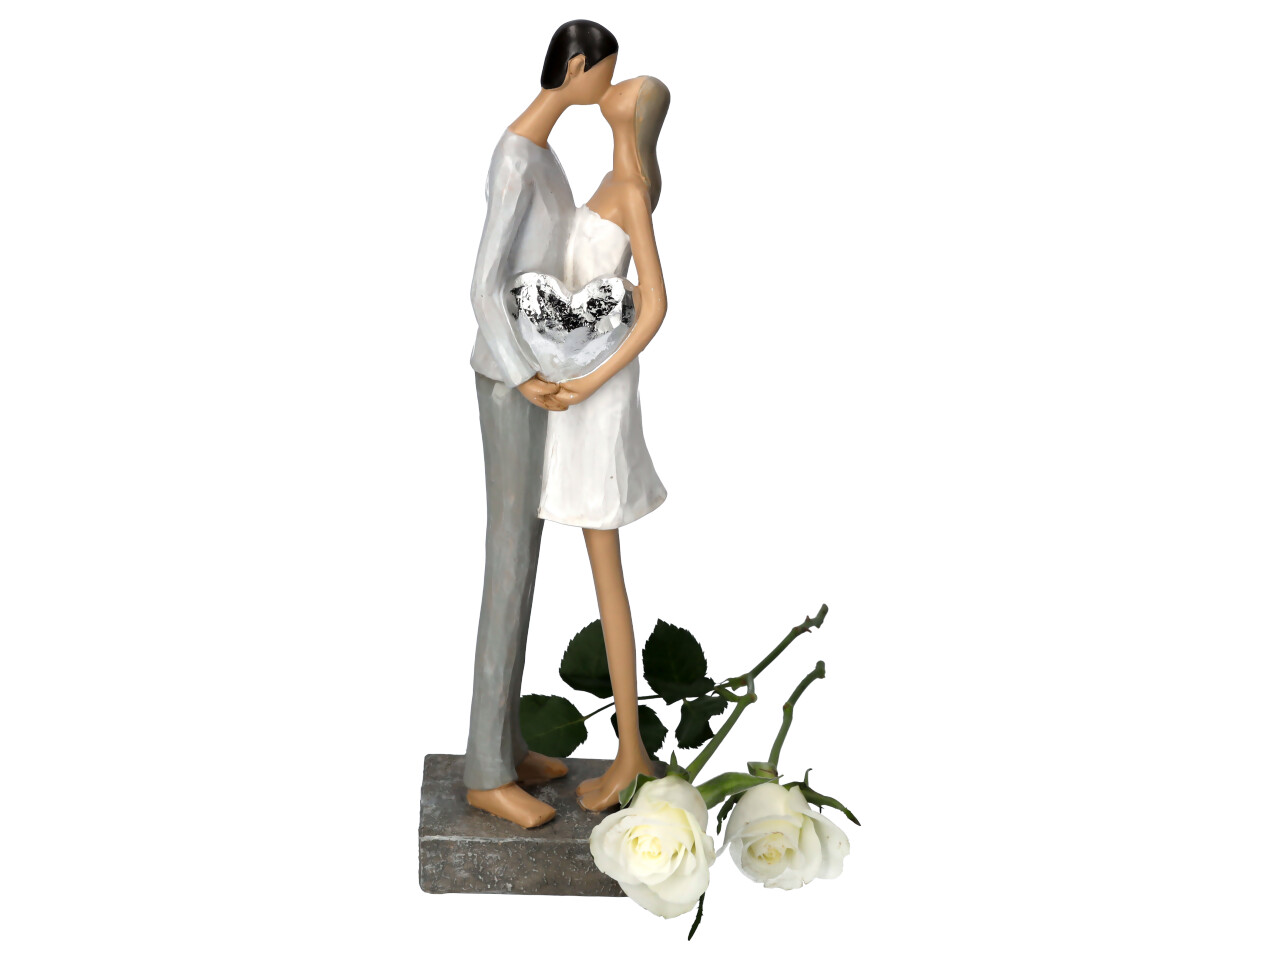 Küssendes Liebespaar stehend mit kleinem Silberherz in den Händen Seitenansicht Bräutigam mit weißer Rose drappiert